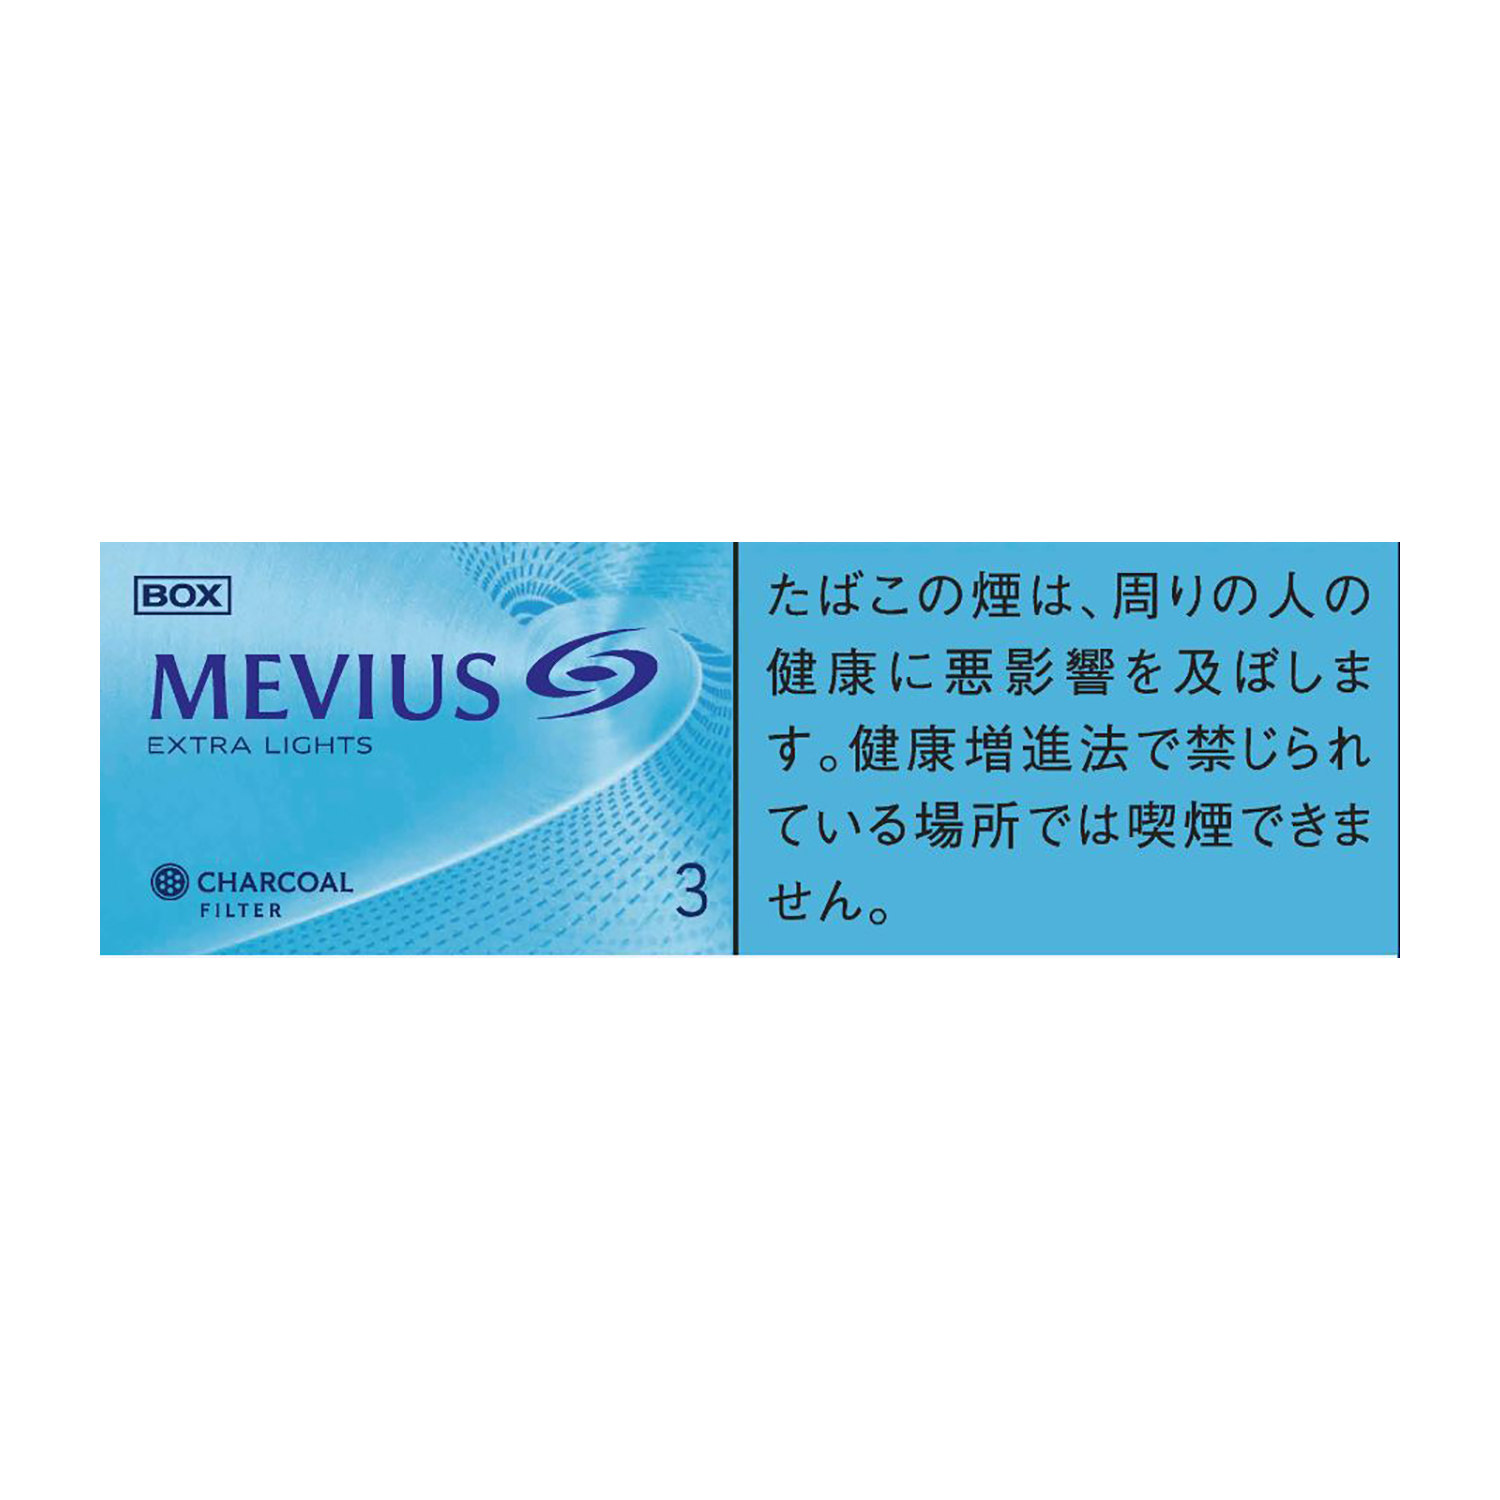 MEVIUS EXTRA LIGHTS BOX / Tar:3mg Nicotine:0.3mg